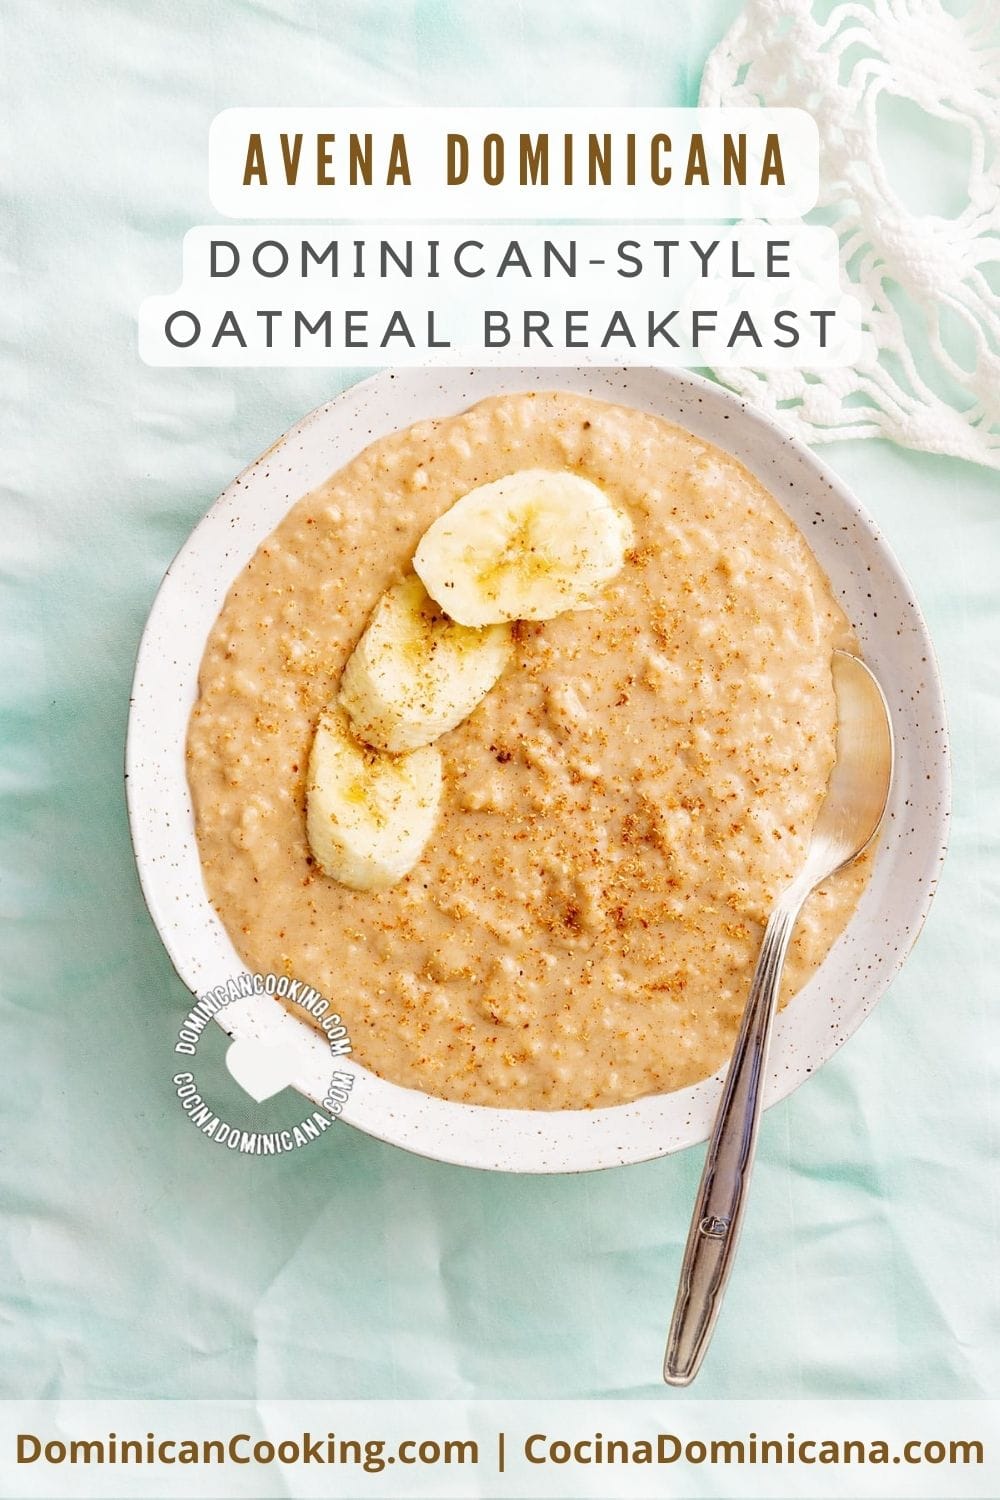 Dominican-style oatmeal breakfast recipe.